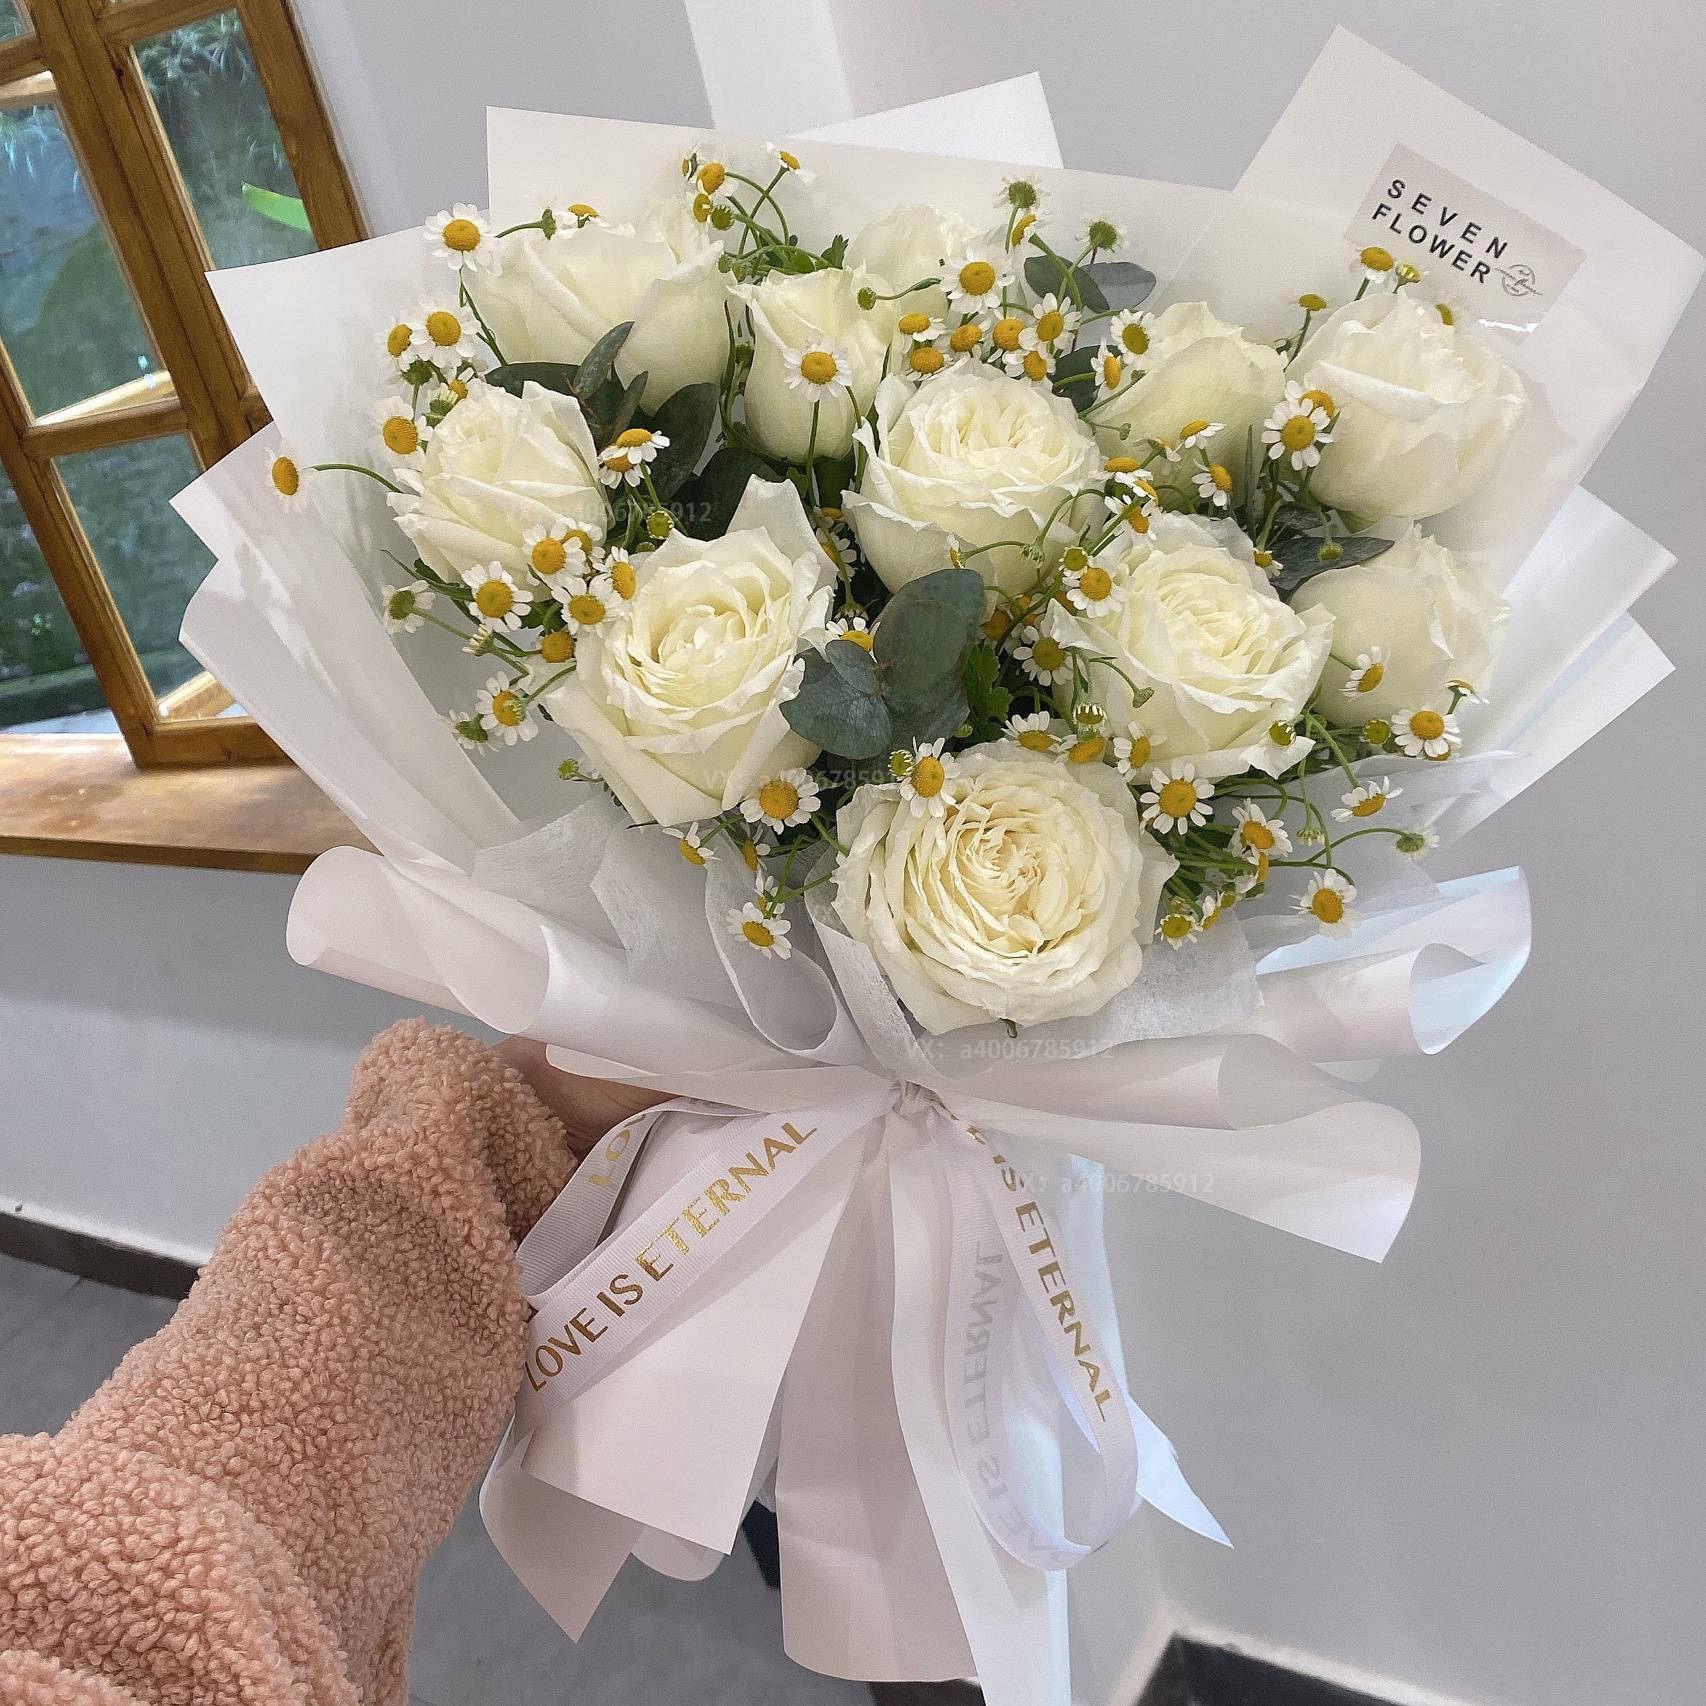 【心中所爱】11朵白玫瑰混搭洋甘菊玫瑰之恋玫瑰之约生日花束xianhua花店送花上门